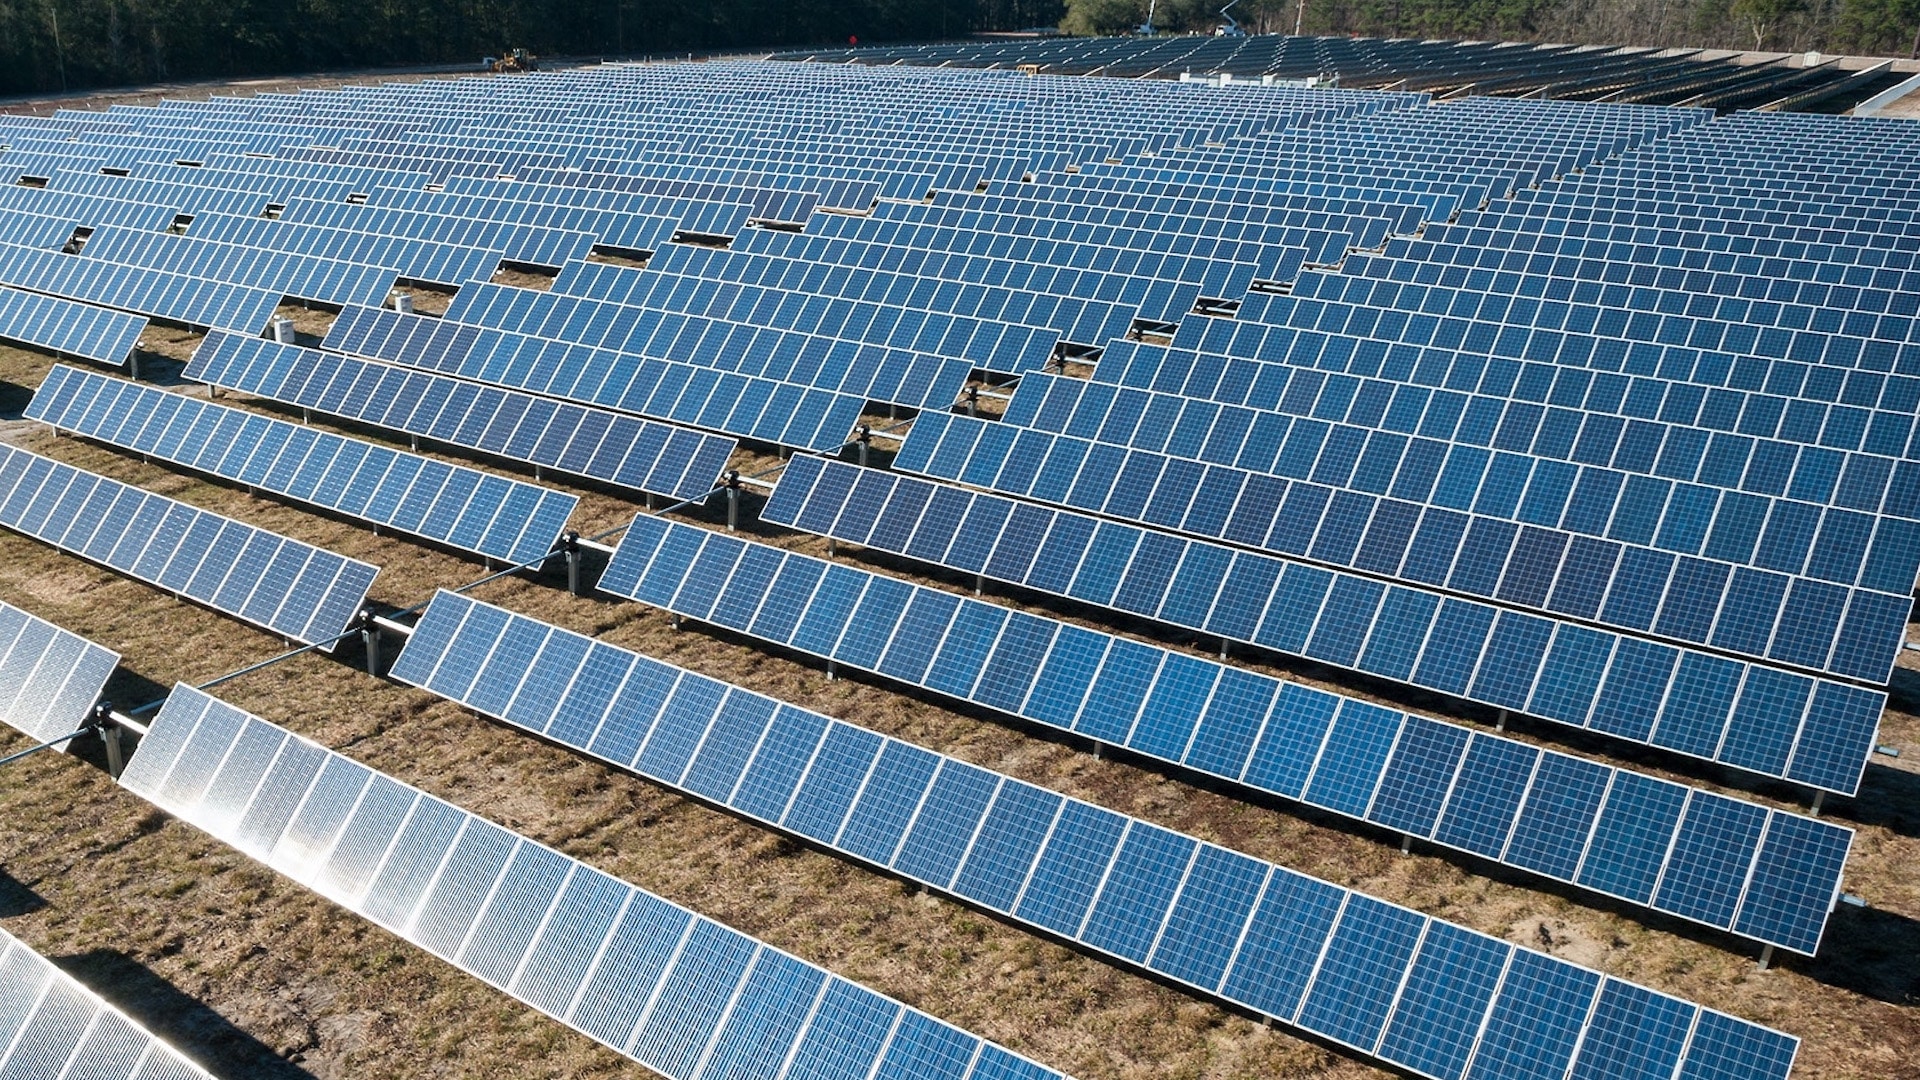 Torrent Power to supply 132 MW solar power to Shapoorji Pallonji Company arms in Gujarat